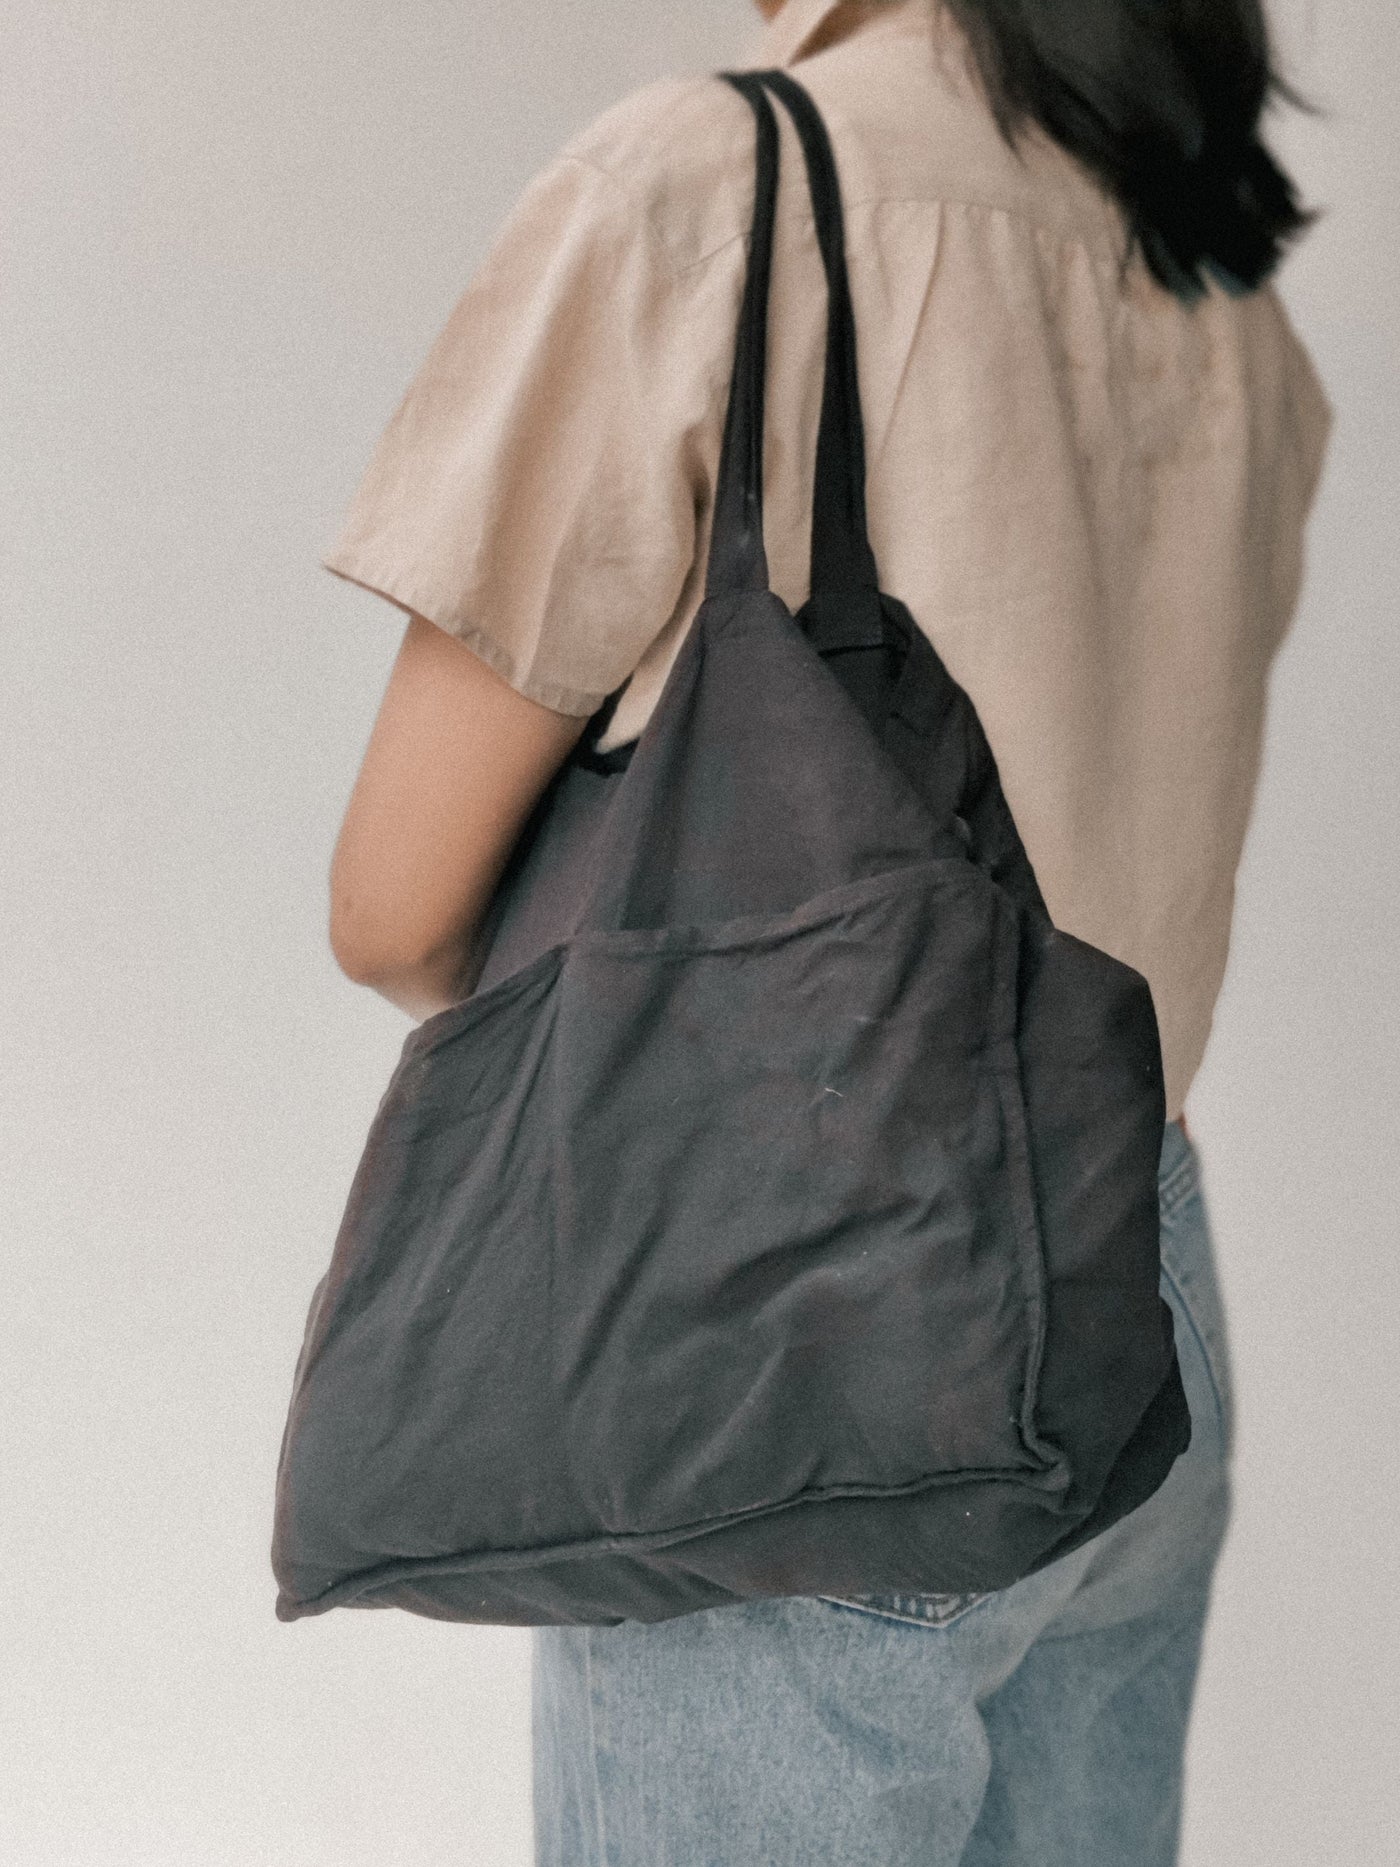 Linen Tote Bag